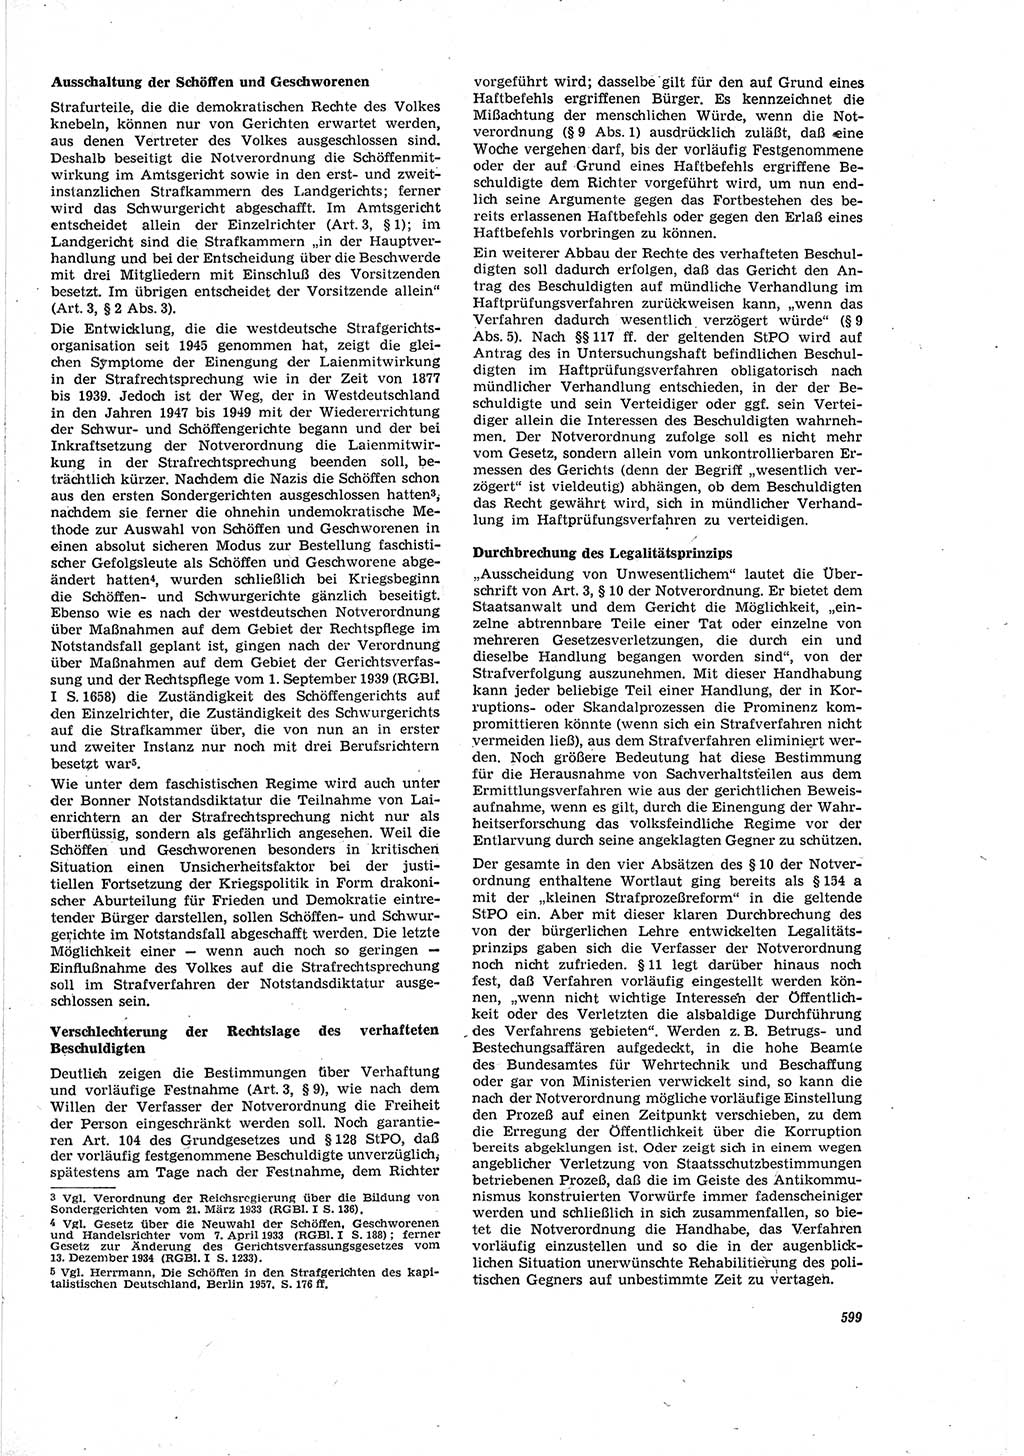 Neue Justiz (NJ), Zeitschrift für Recht und Rechtswissenschaft [Deutsche Demokratische Republik (DDR)], 20. Jahrgang 1966, Seite 599 (NJ DDR 1966, S. 599)